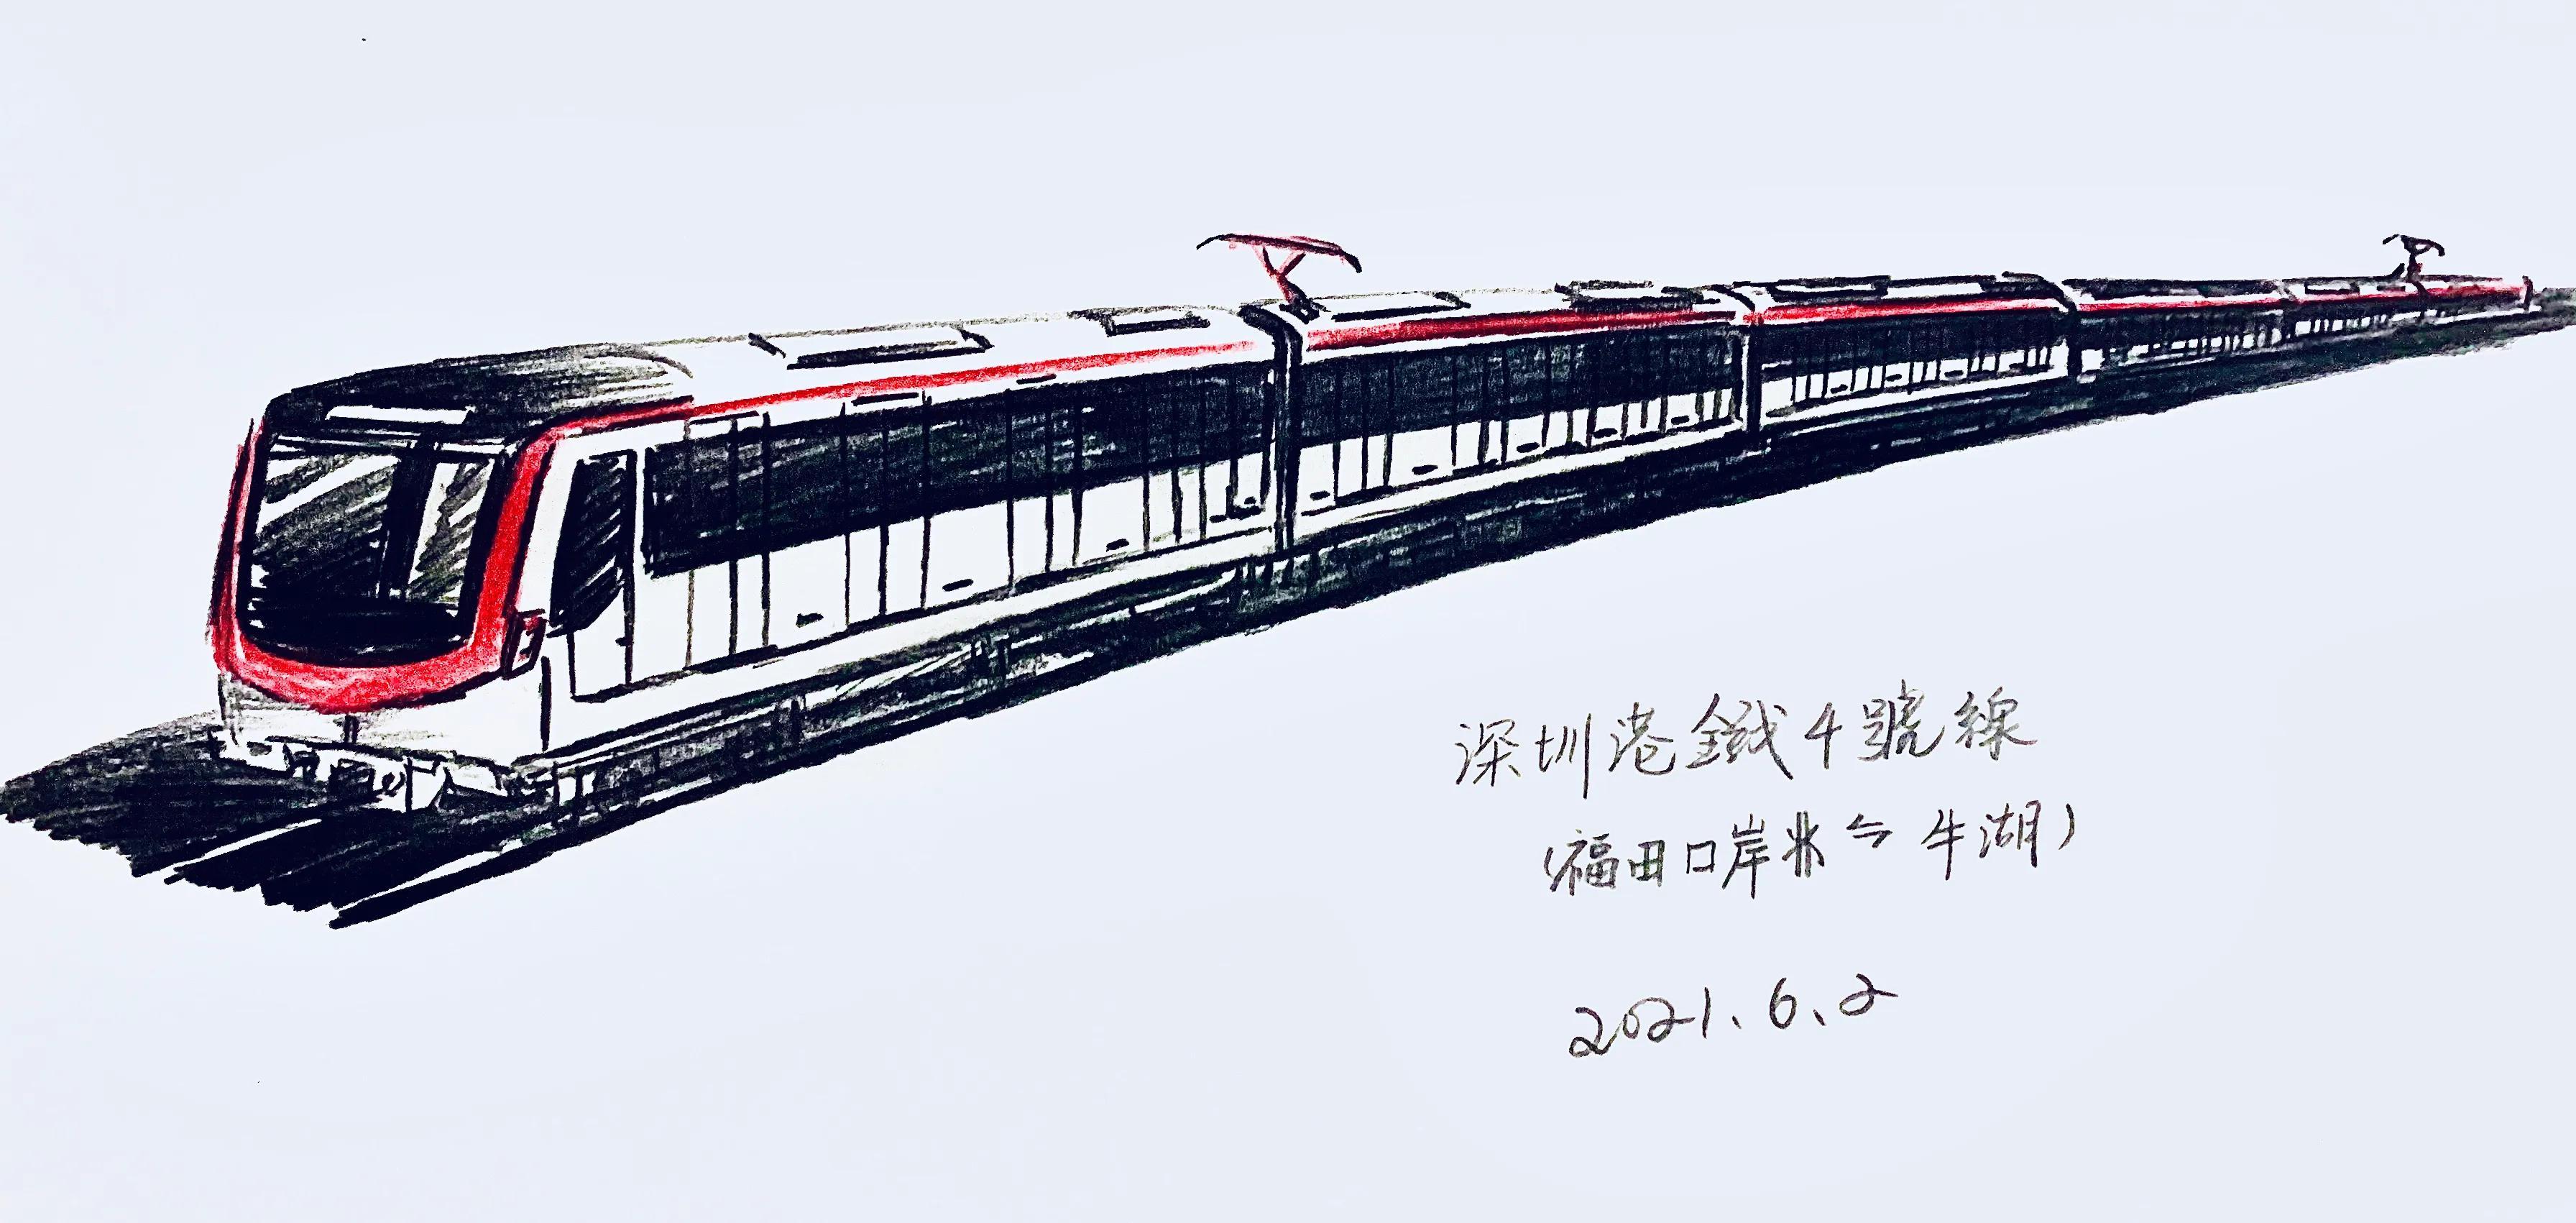 深圳地铁四号线什么时候开通的？会经过哪些地点？